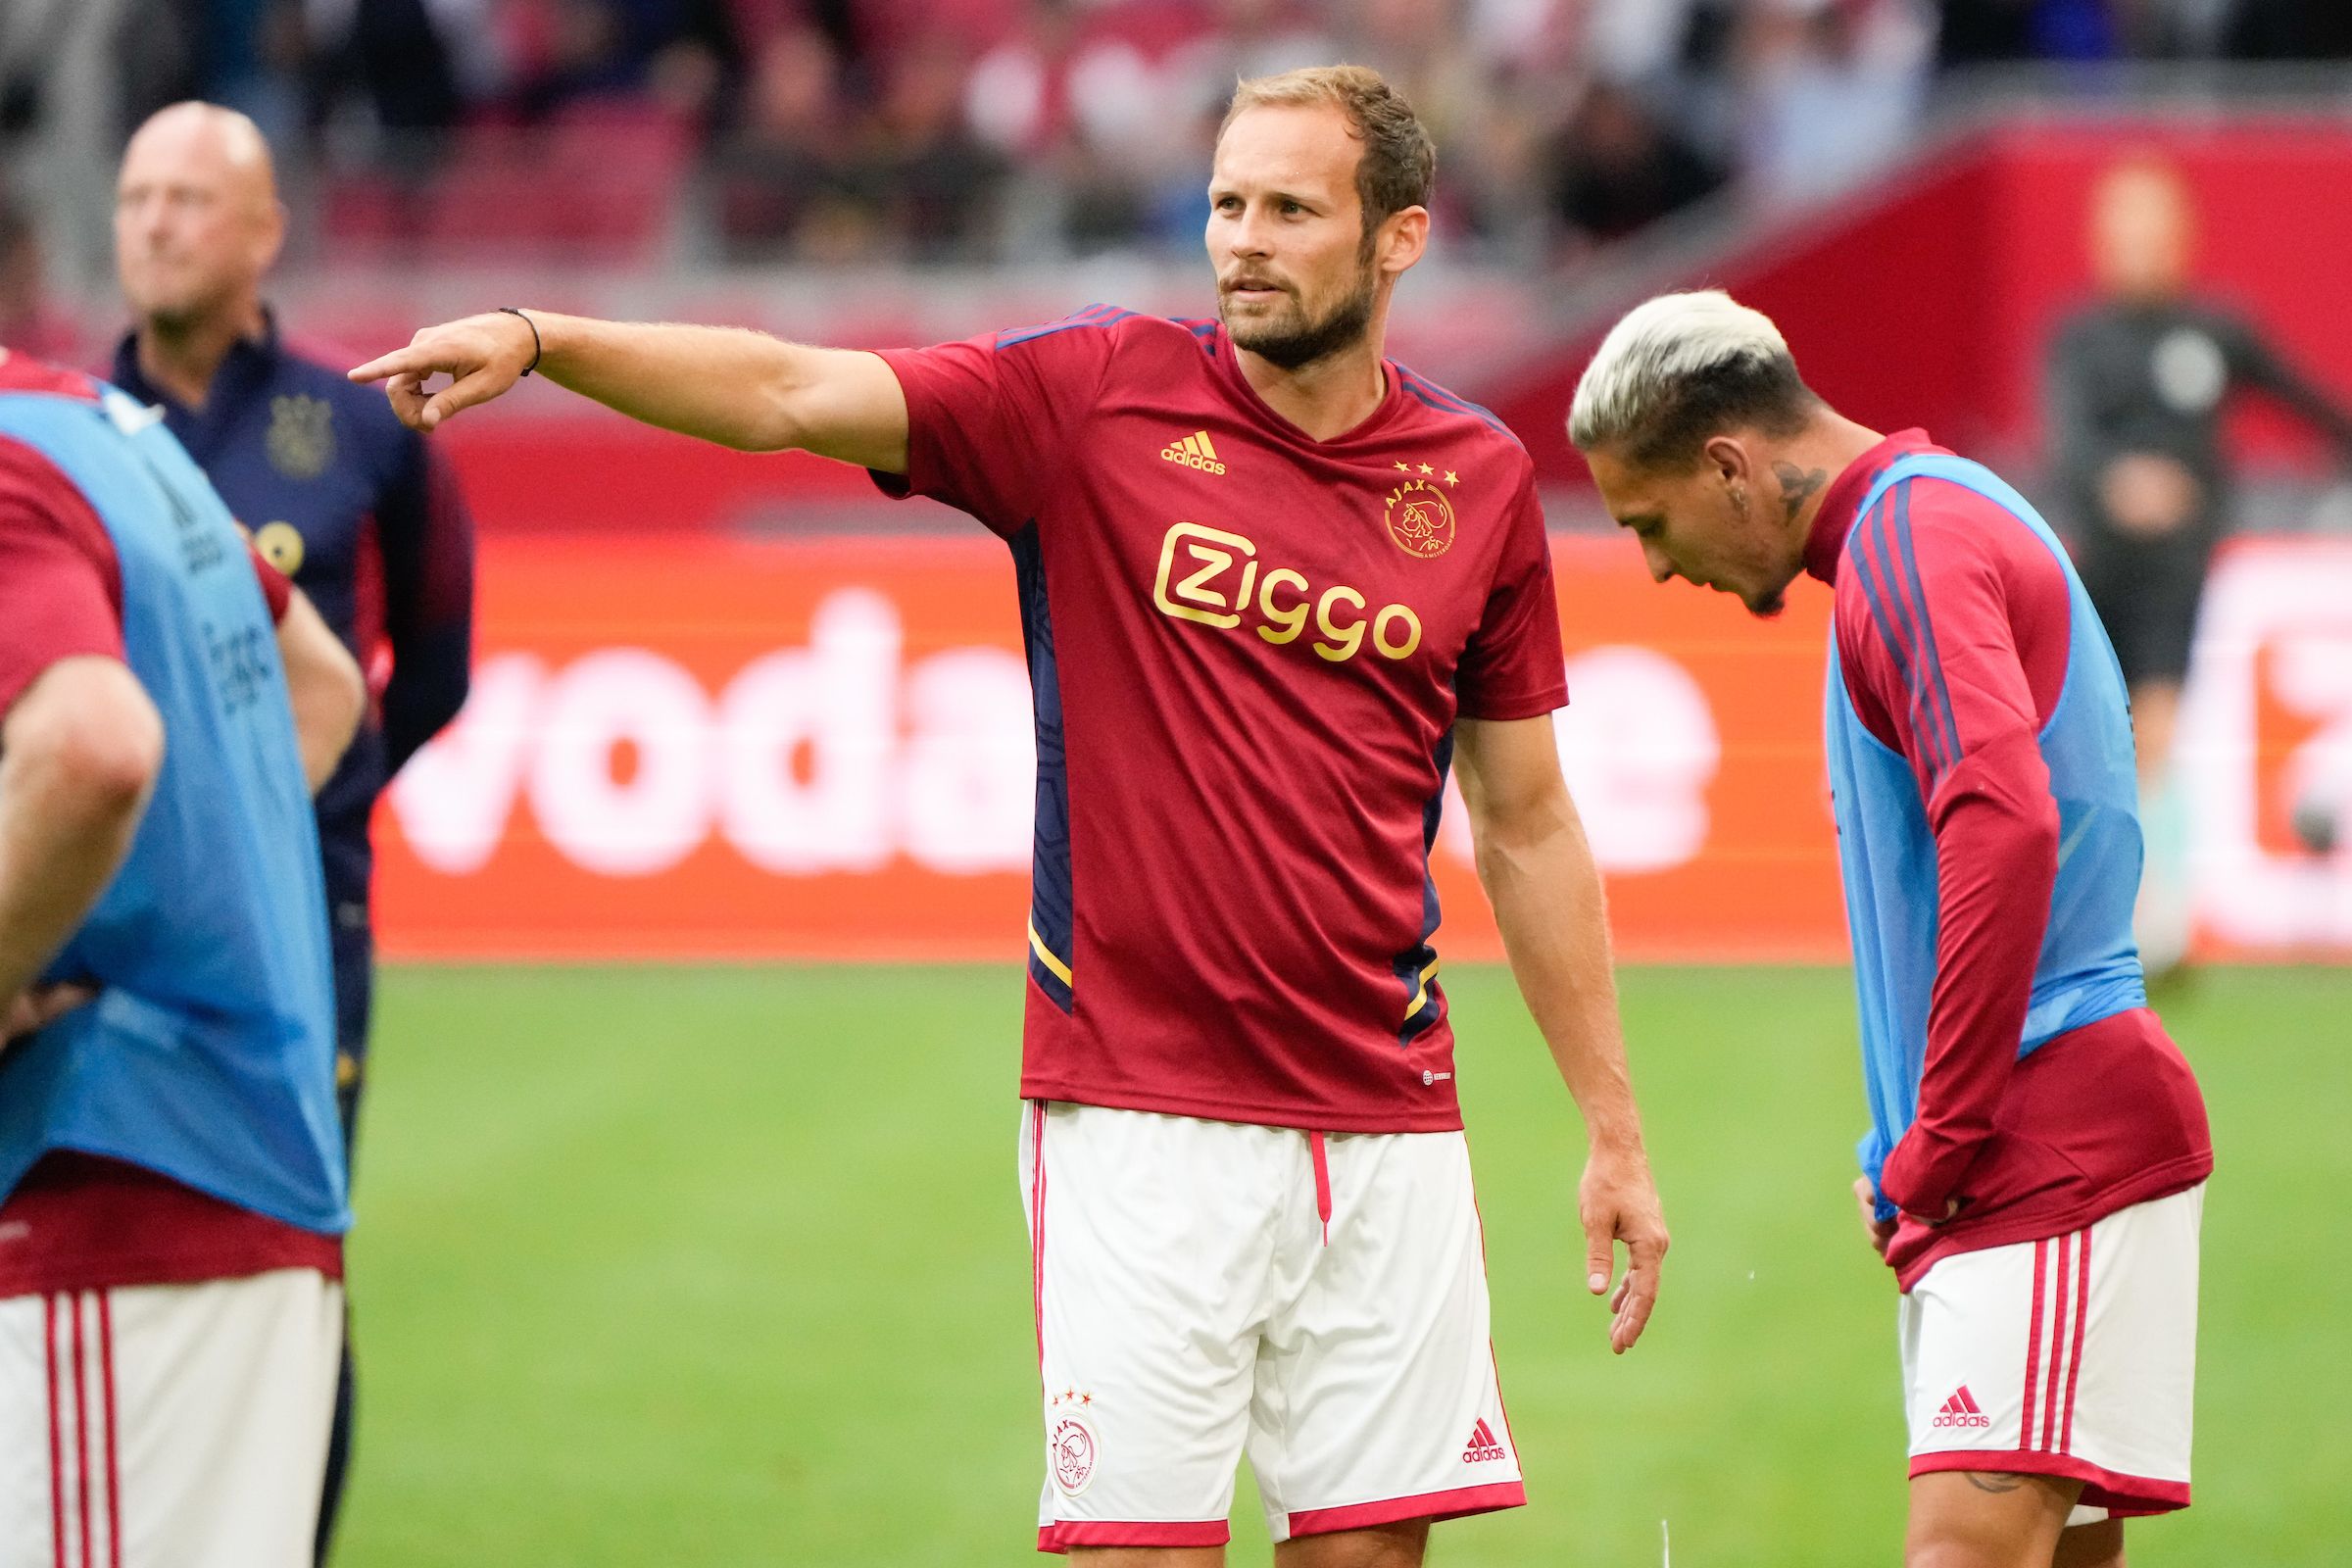 Аякс – ПСВ прогноз на матч 30 июля 2022: ставки и коэффициенты на Суперкубок Нидерландов